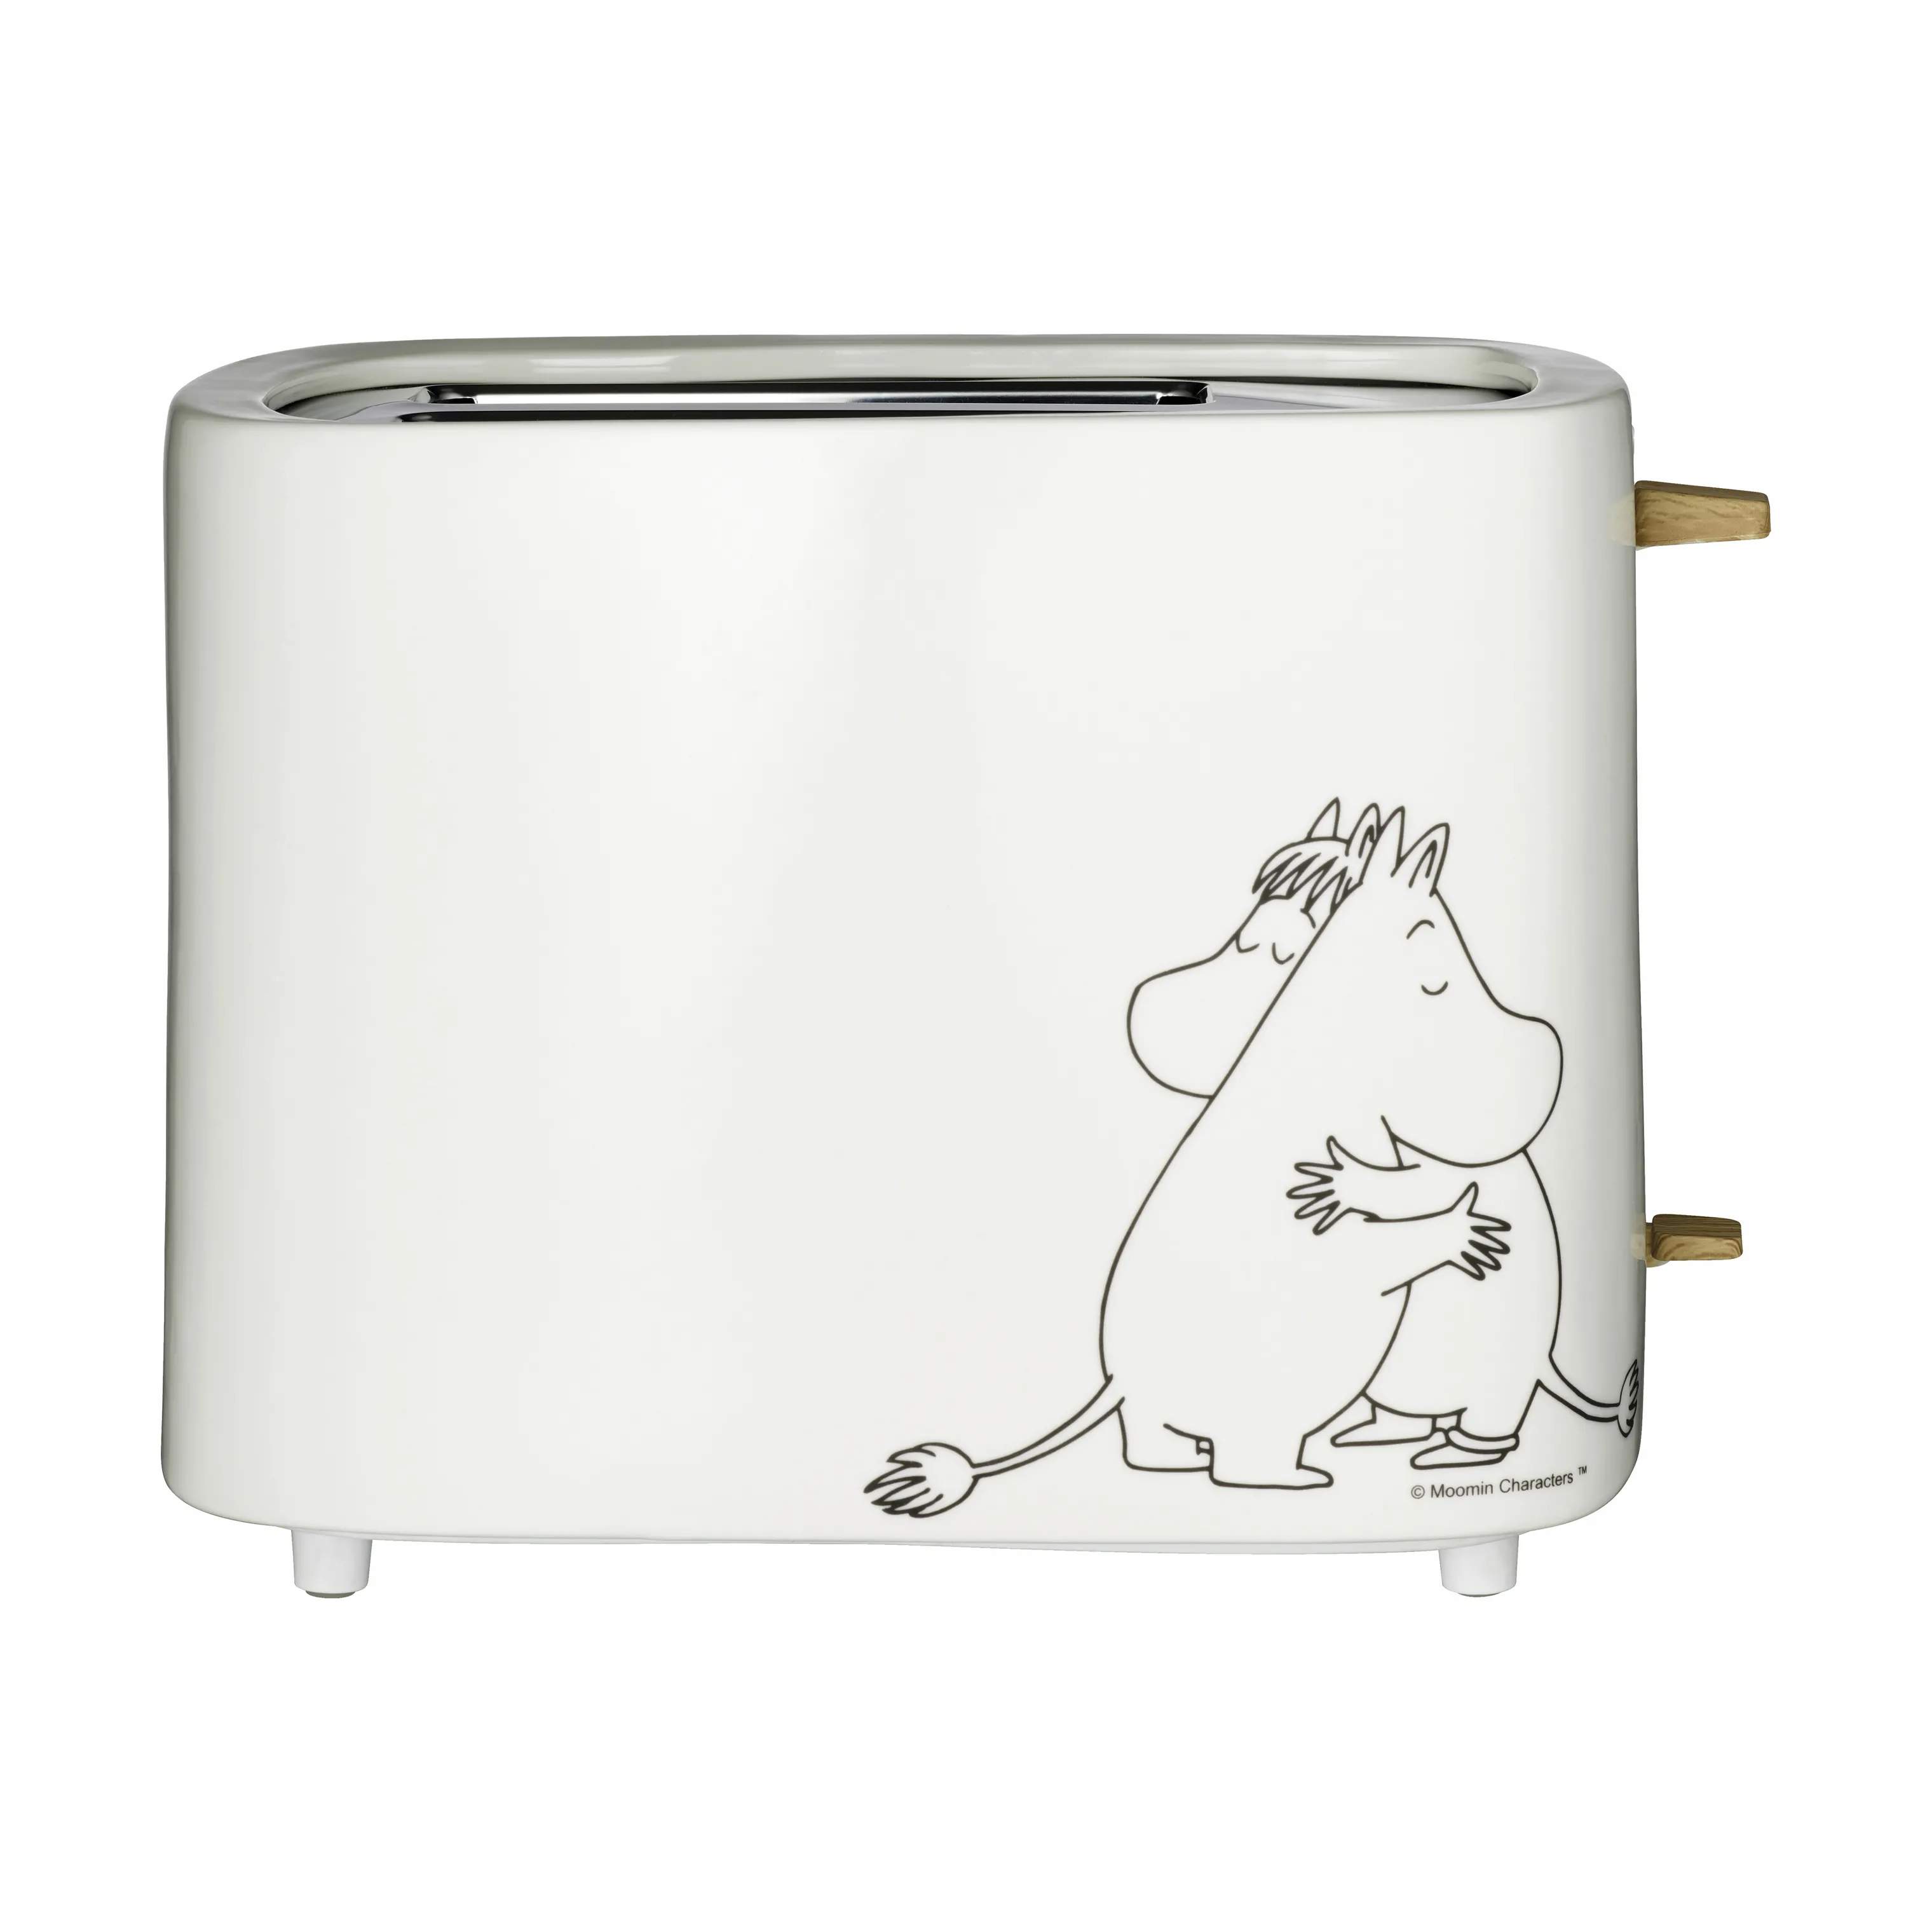 Moomin by Adexi brødristere Toaster - Mumi og Snorkfrøkenen